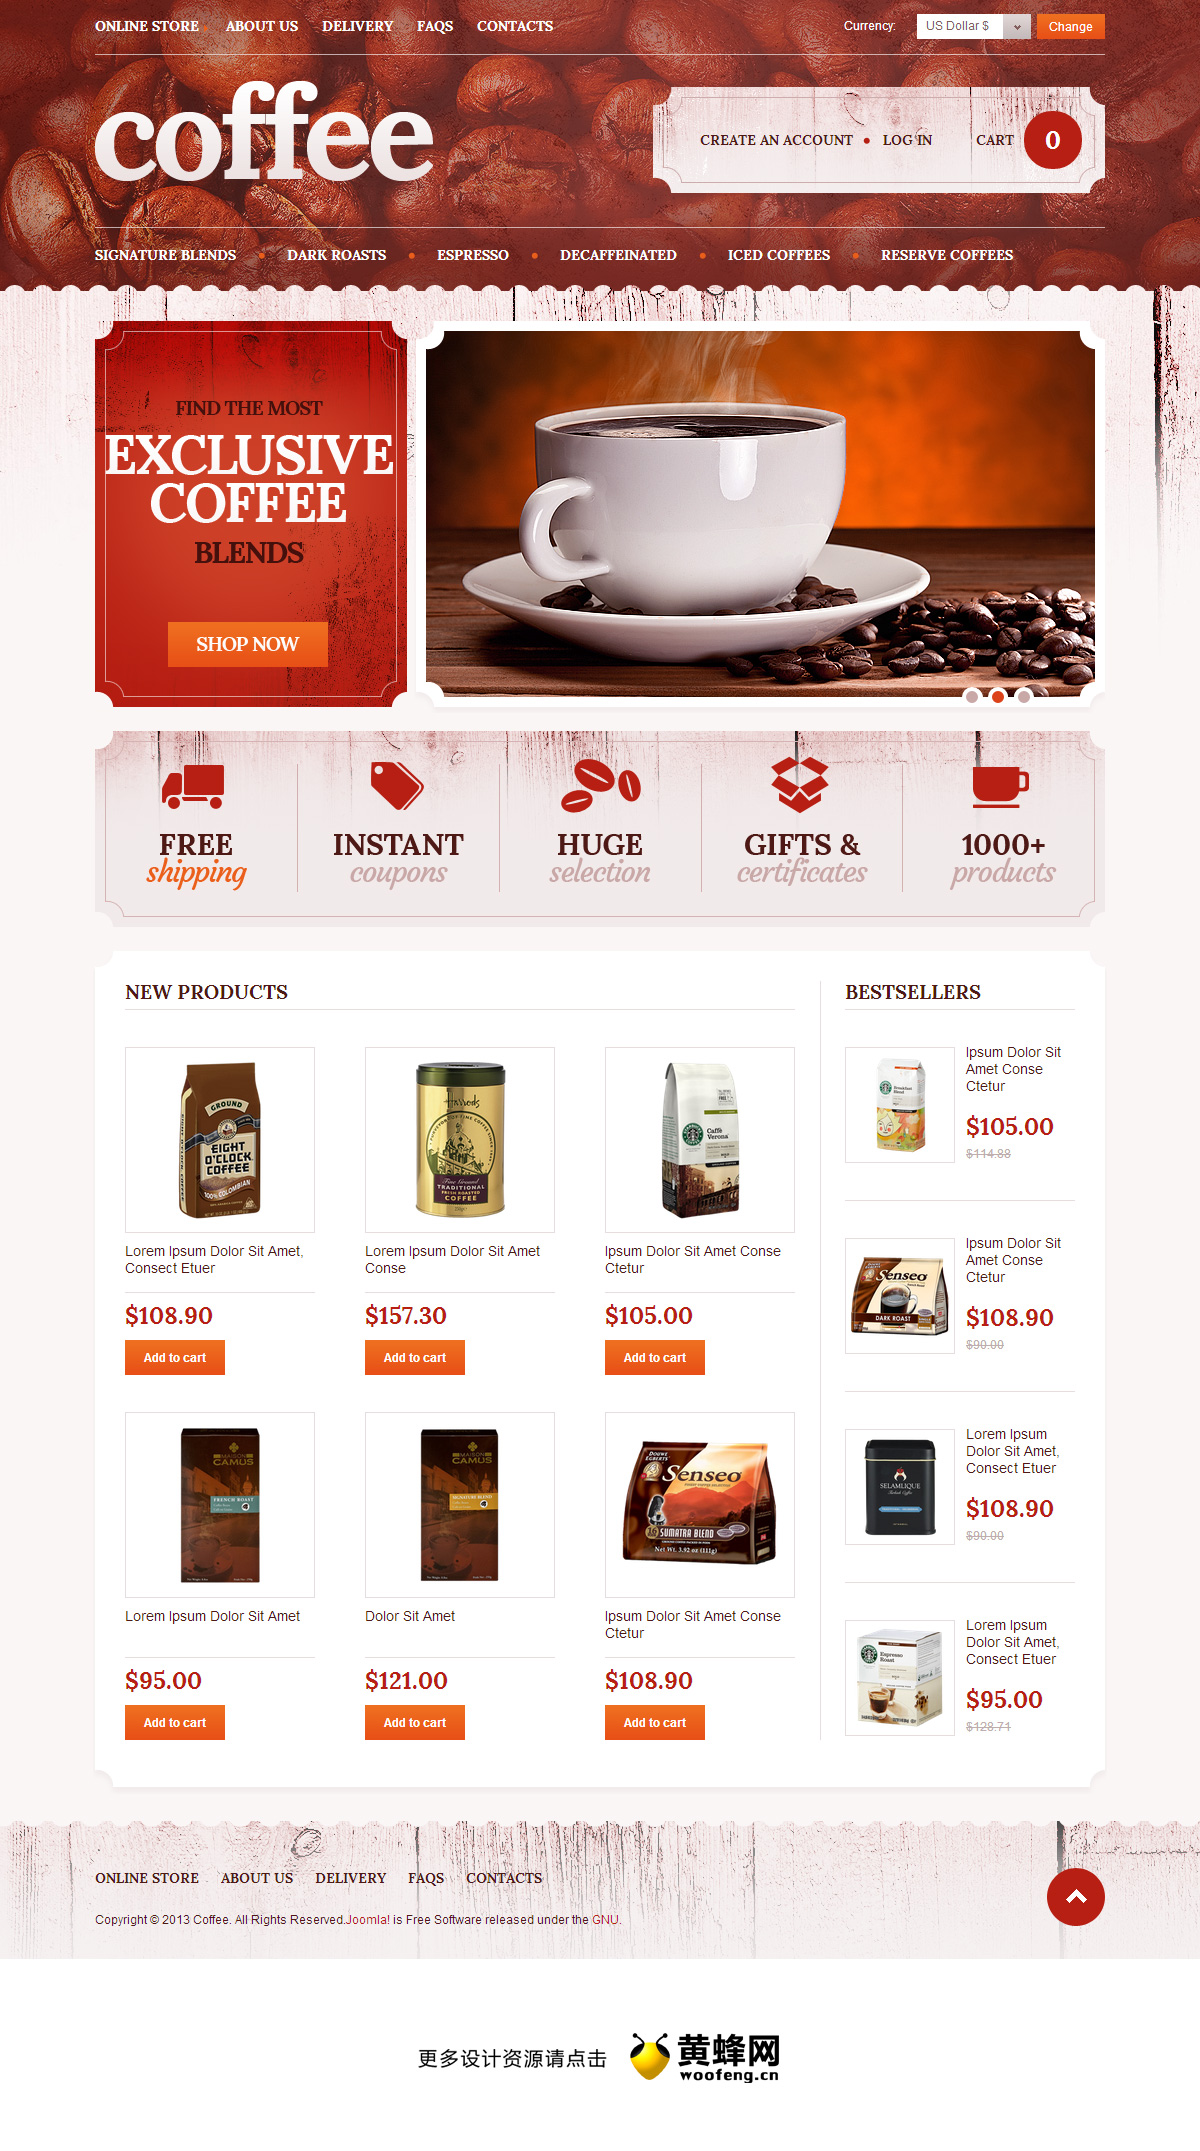 咖啡厅网站模板设计欣赏0221，来源自黄蜂网https://woofeng.cn/